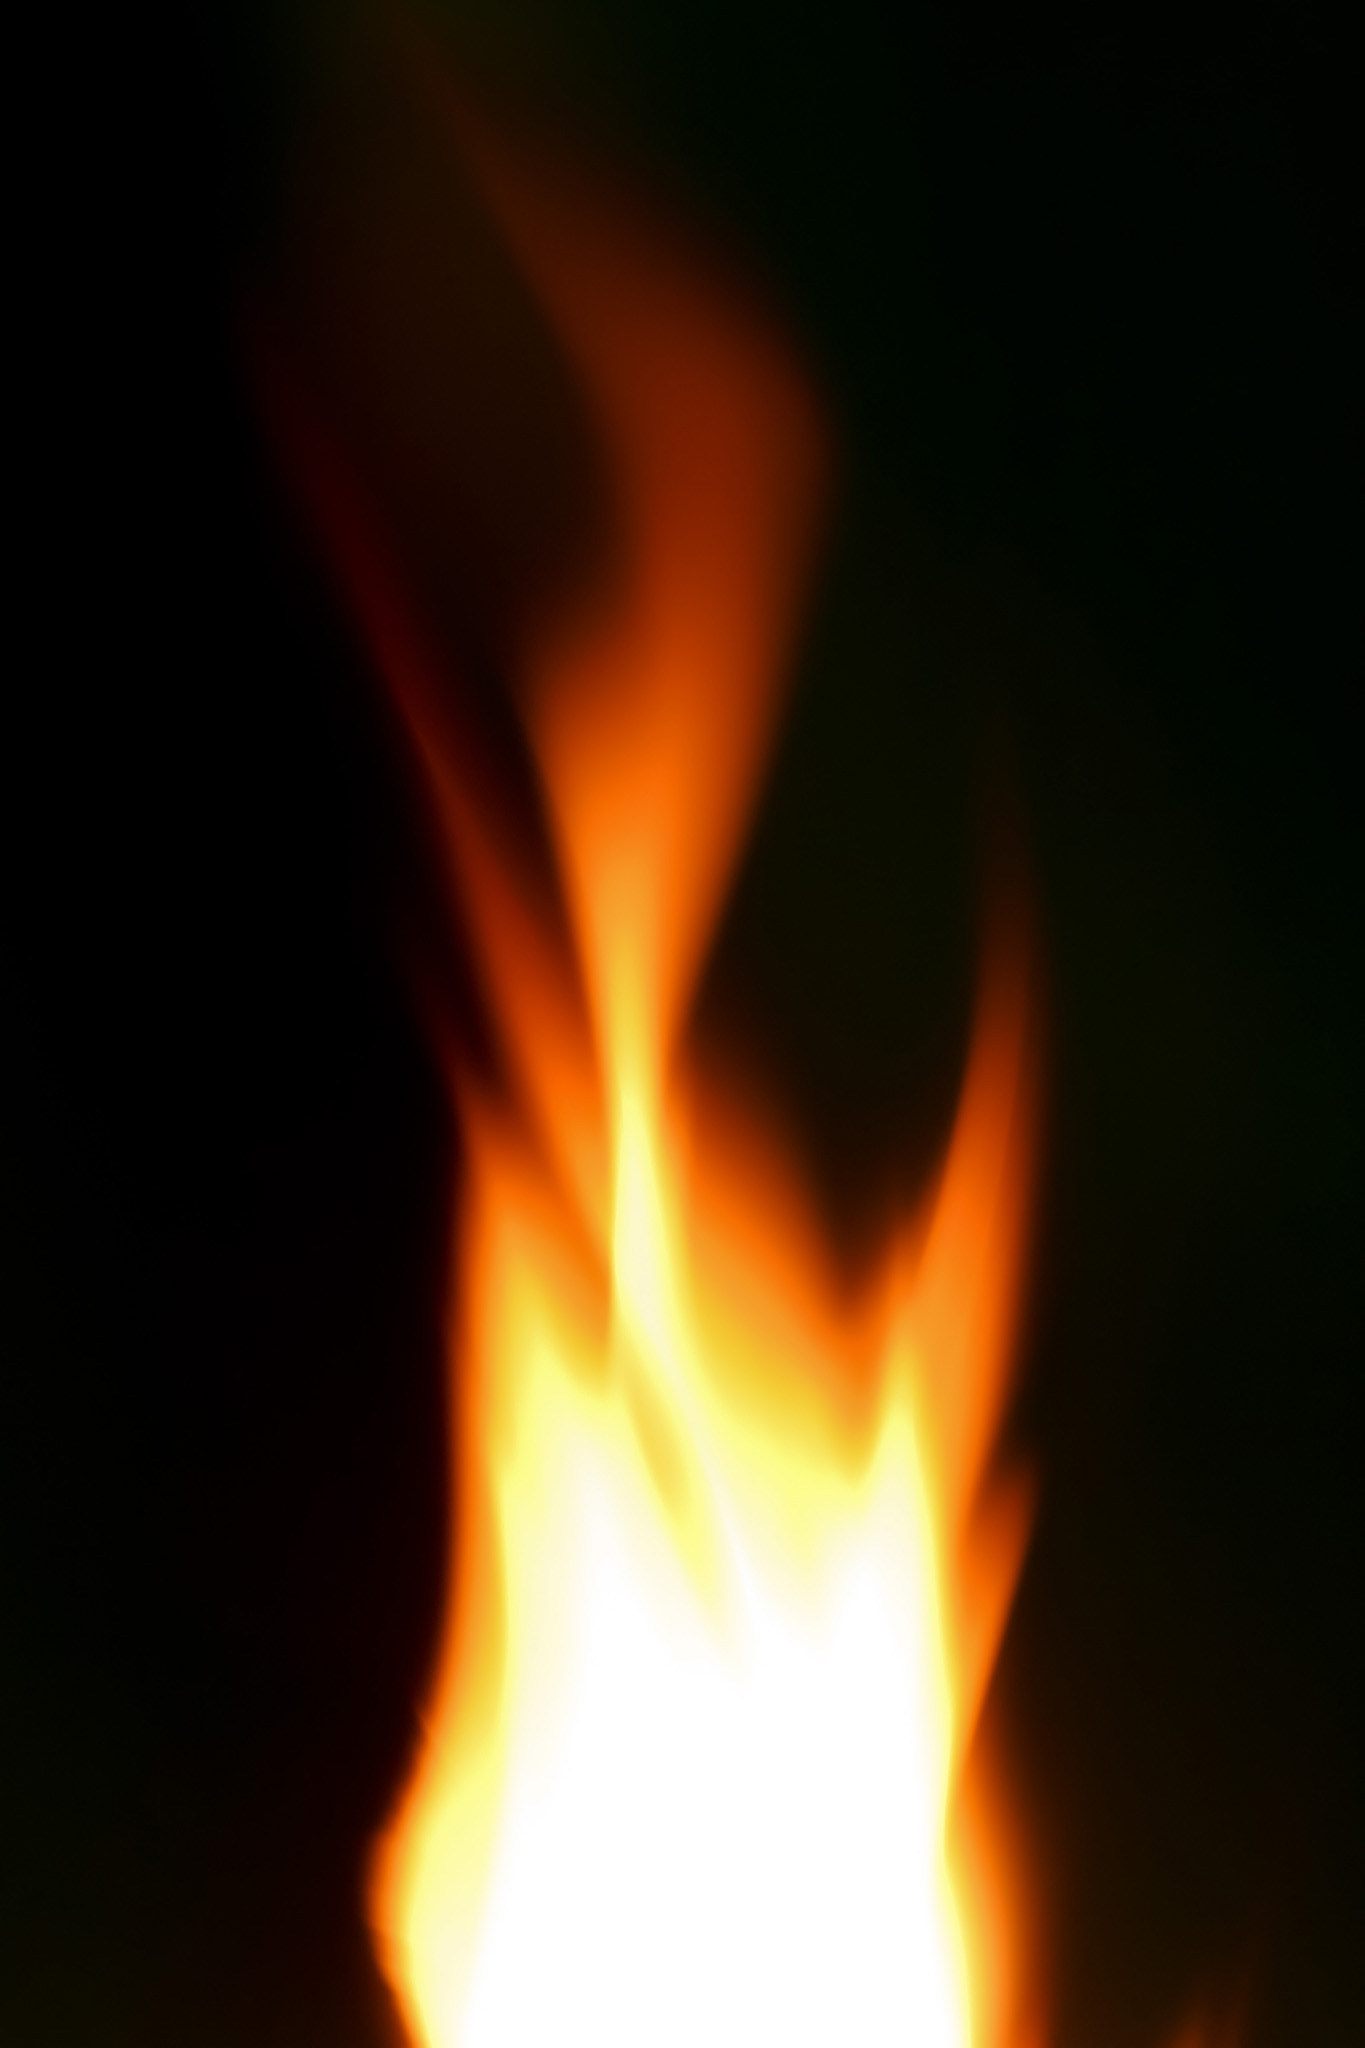 暗闇に燃え上がる火柱 のテクスチャ素材を無料ダウンロード 1 フリー素材 Beiz Images